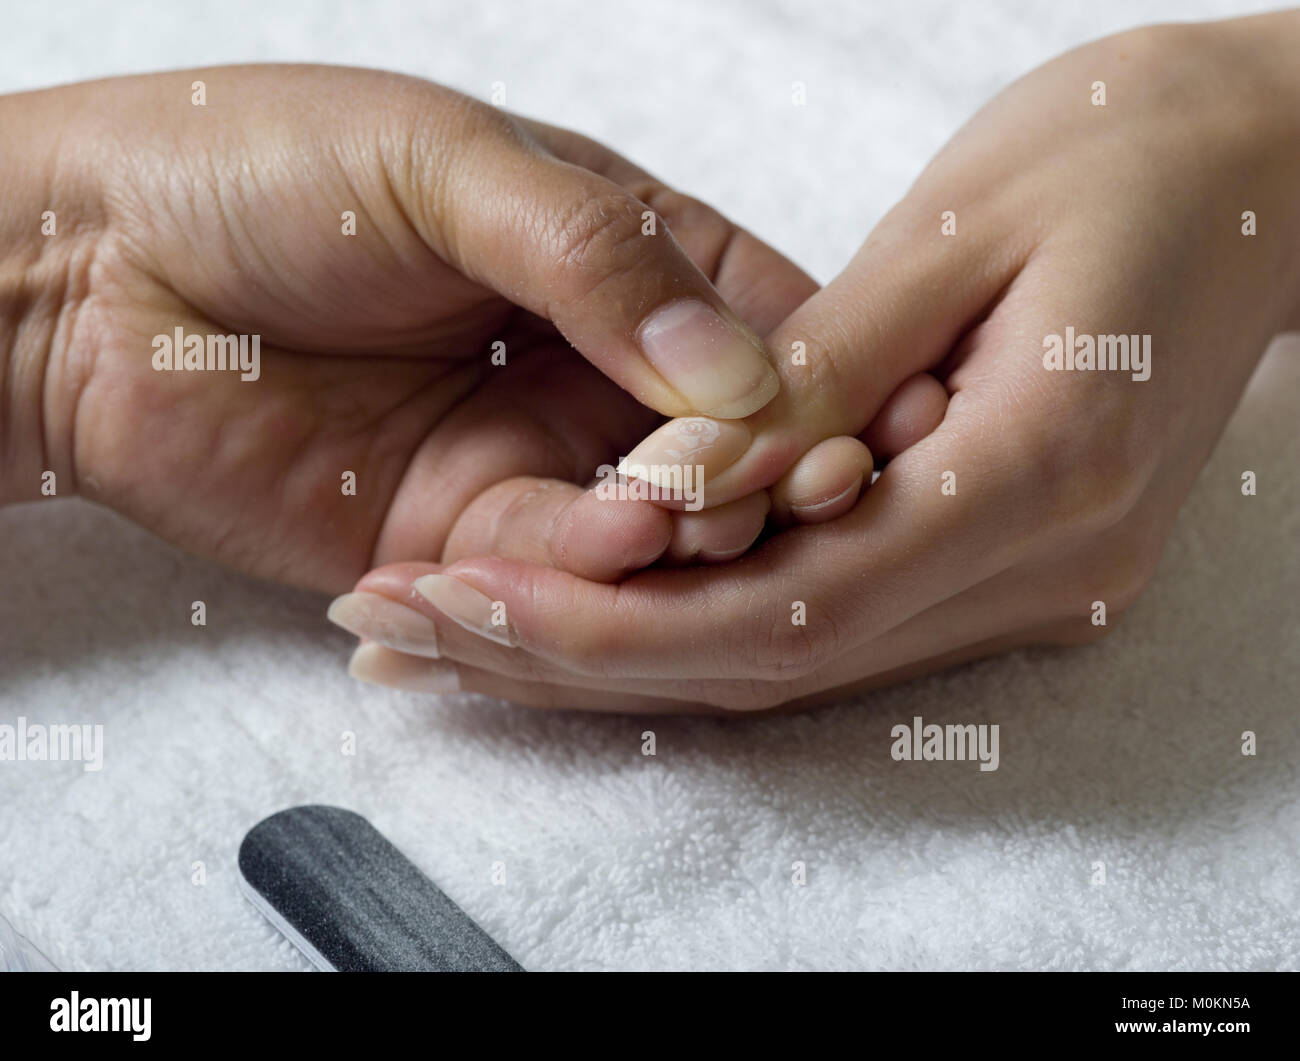 Una chiusura delle mani femminili facendo manicure, applicare la colla per unghie acriliche Foto Stock